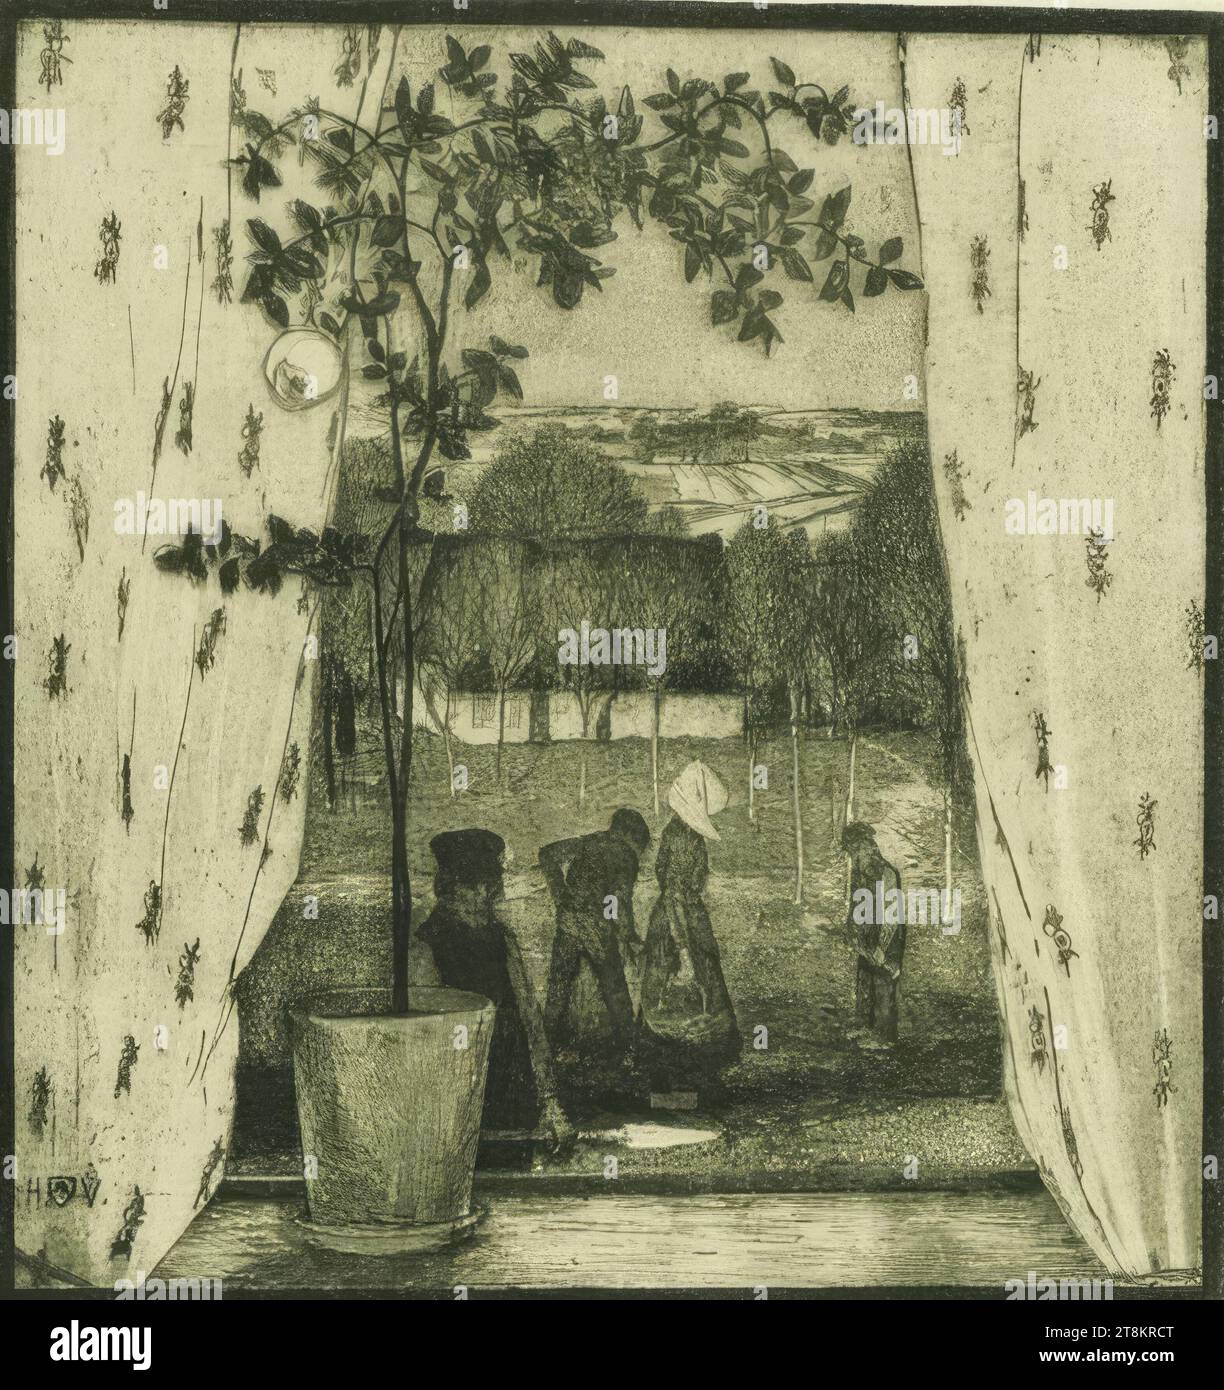 Fino alla primavera; prima dell'orario di chiusura, fino alla primavera, Heinrich Johann Vogeler, Brema 1872 - 1942 Vorosilovsk, Kazakistan, 1899, stampa, incisione Foto Stock